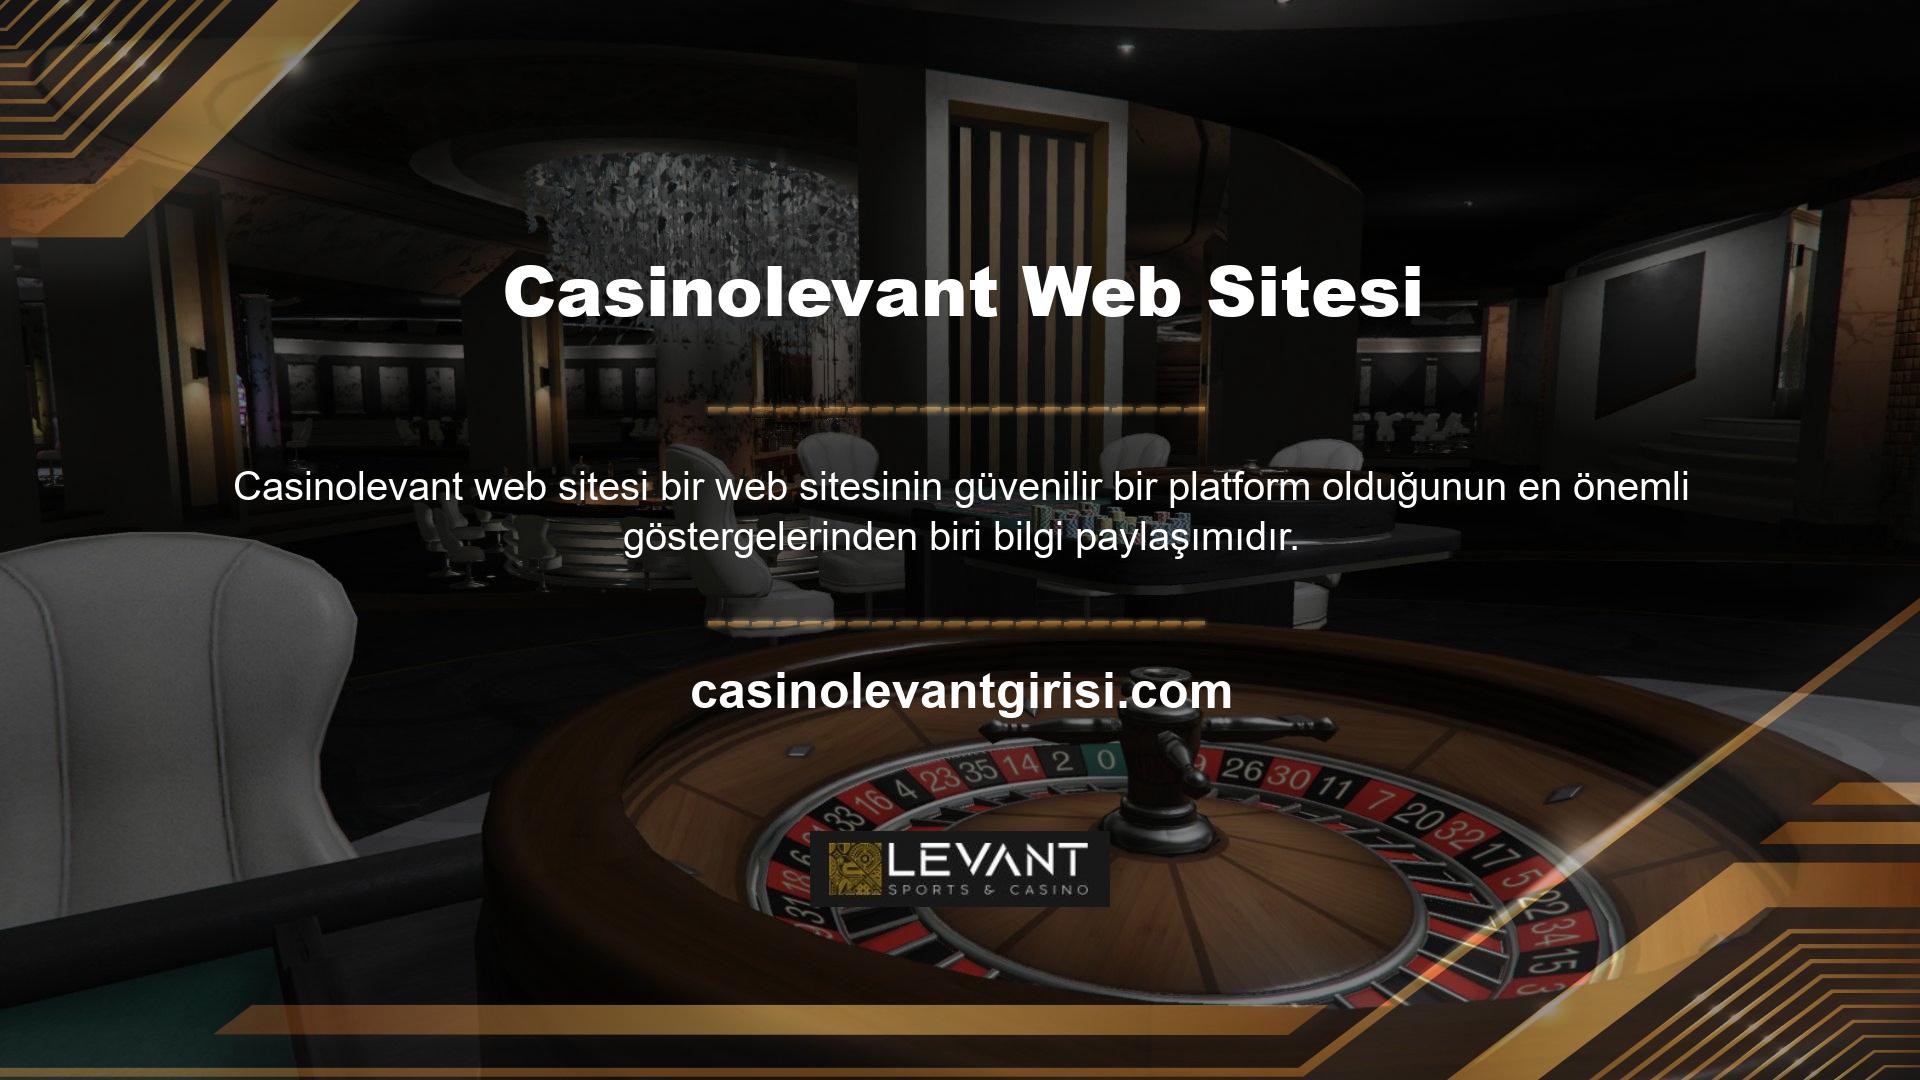 Casinolevant sitesi ile bilgi paylaşabilir miyim? Üye iseniz bilgilerinizi buraya girmelisiniz